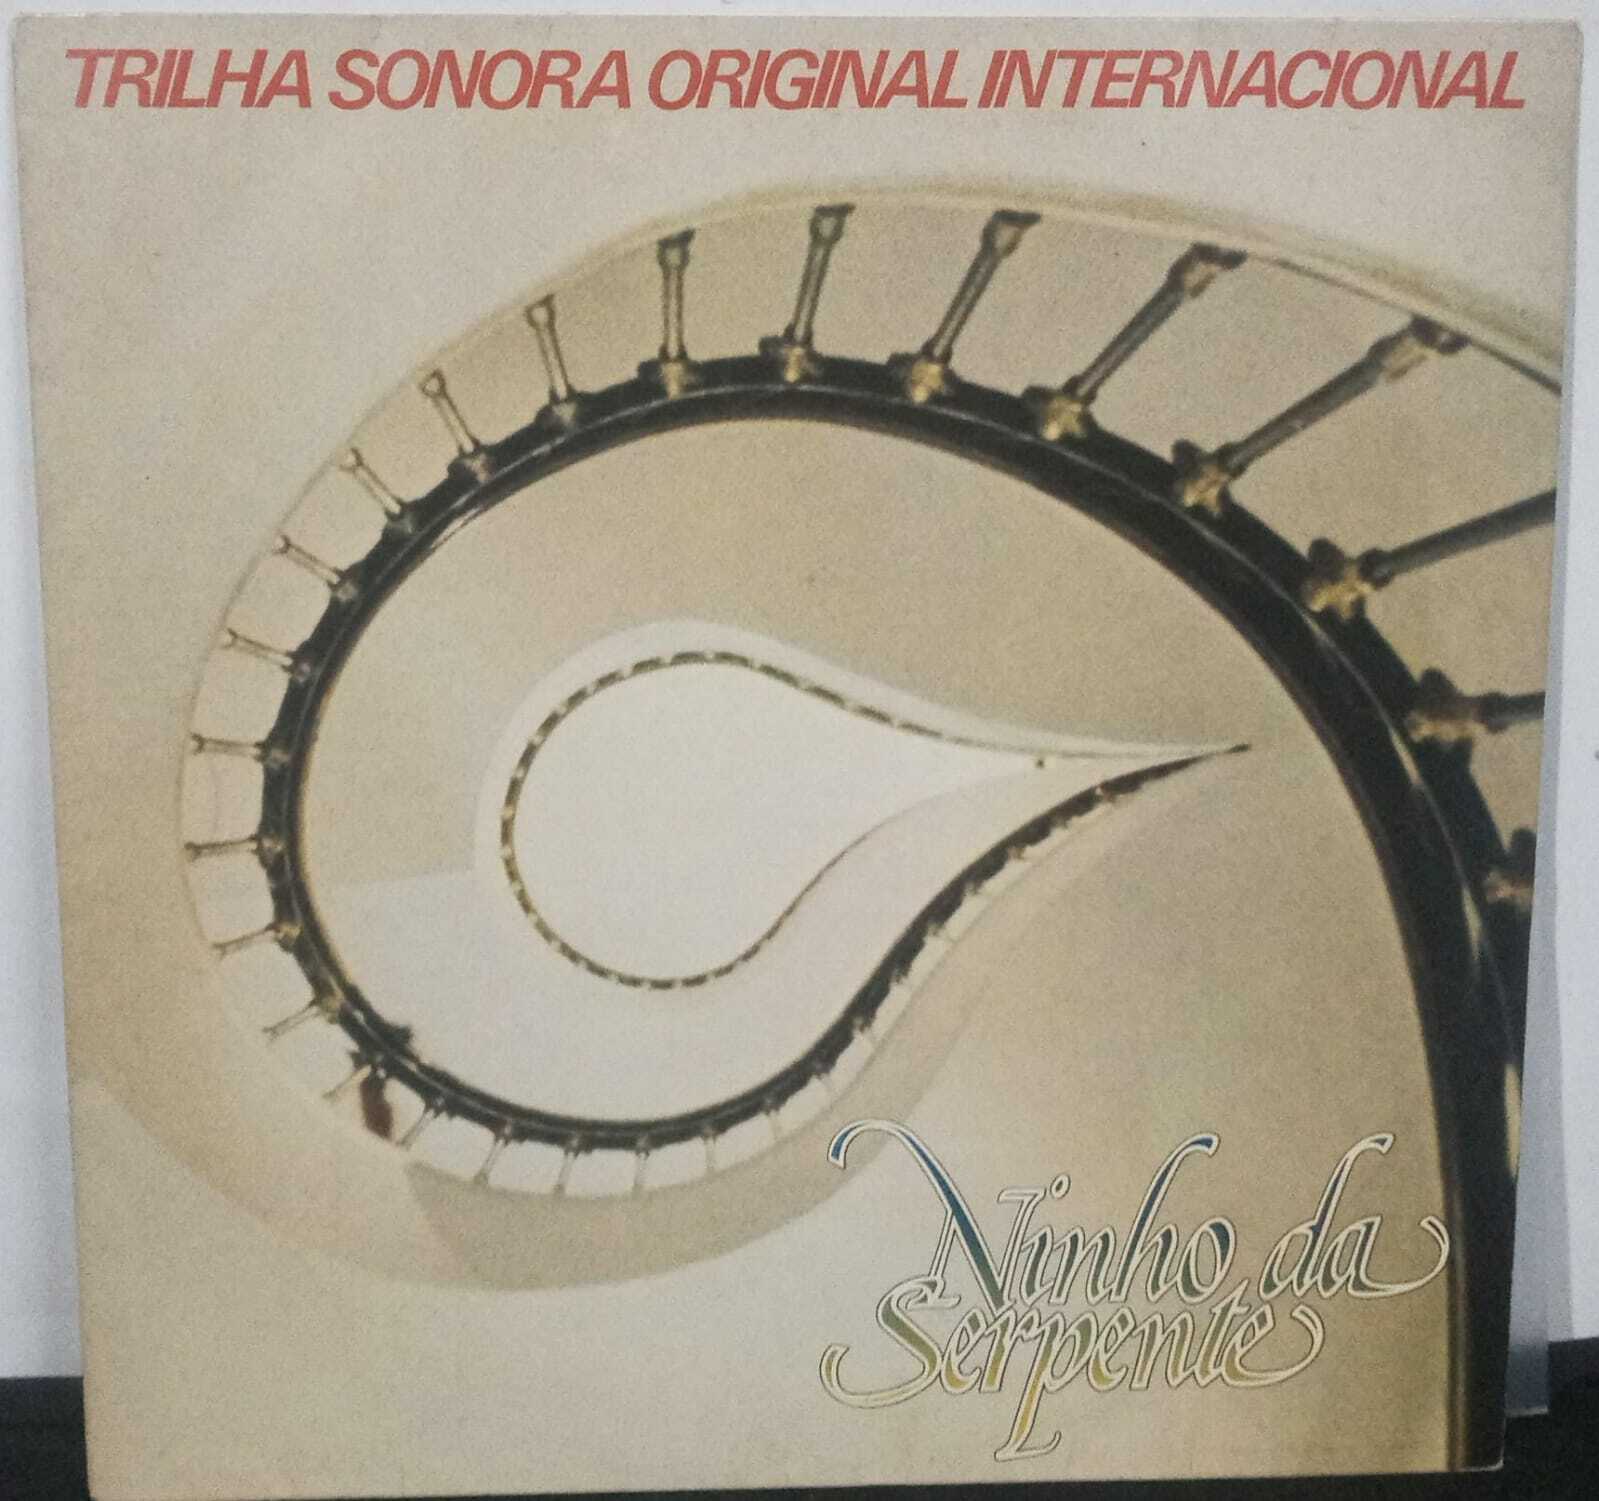 Vinil - Ninho Da Serpente - Trilha Sonora Original Internacional da Novela